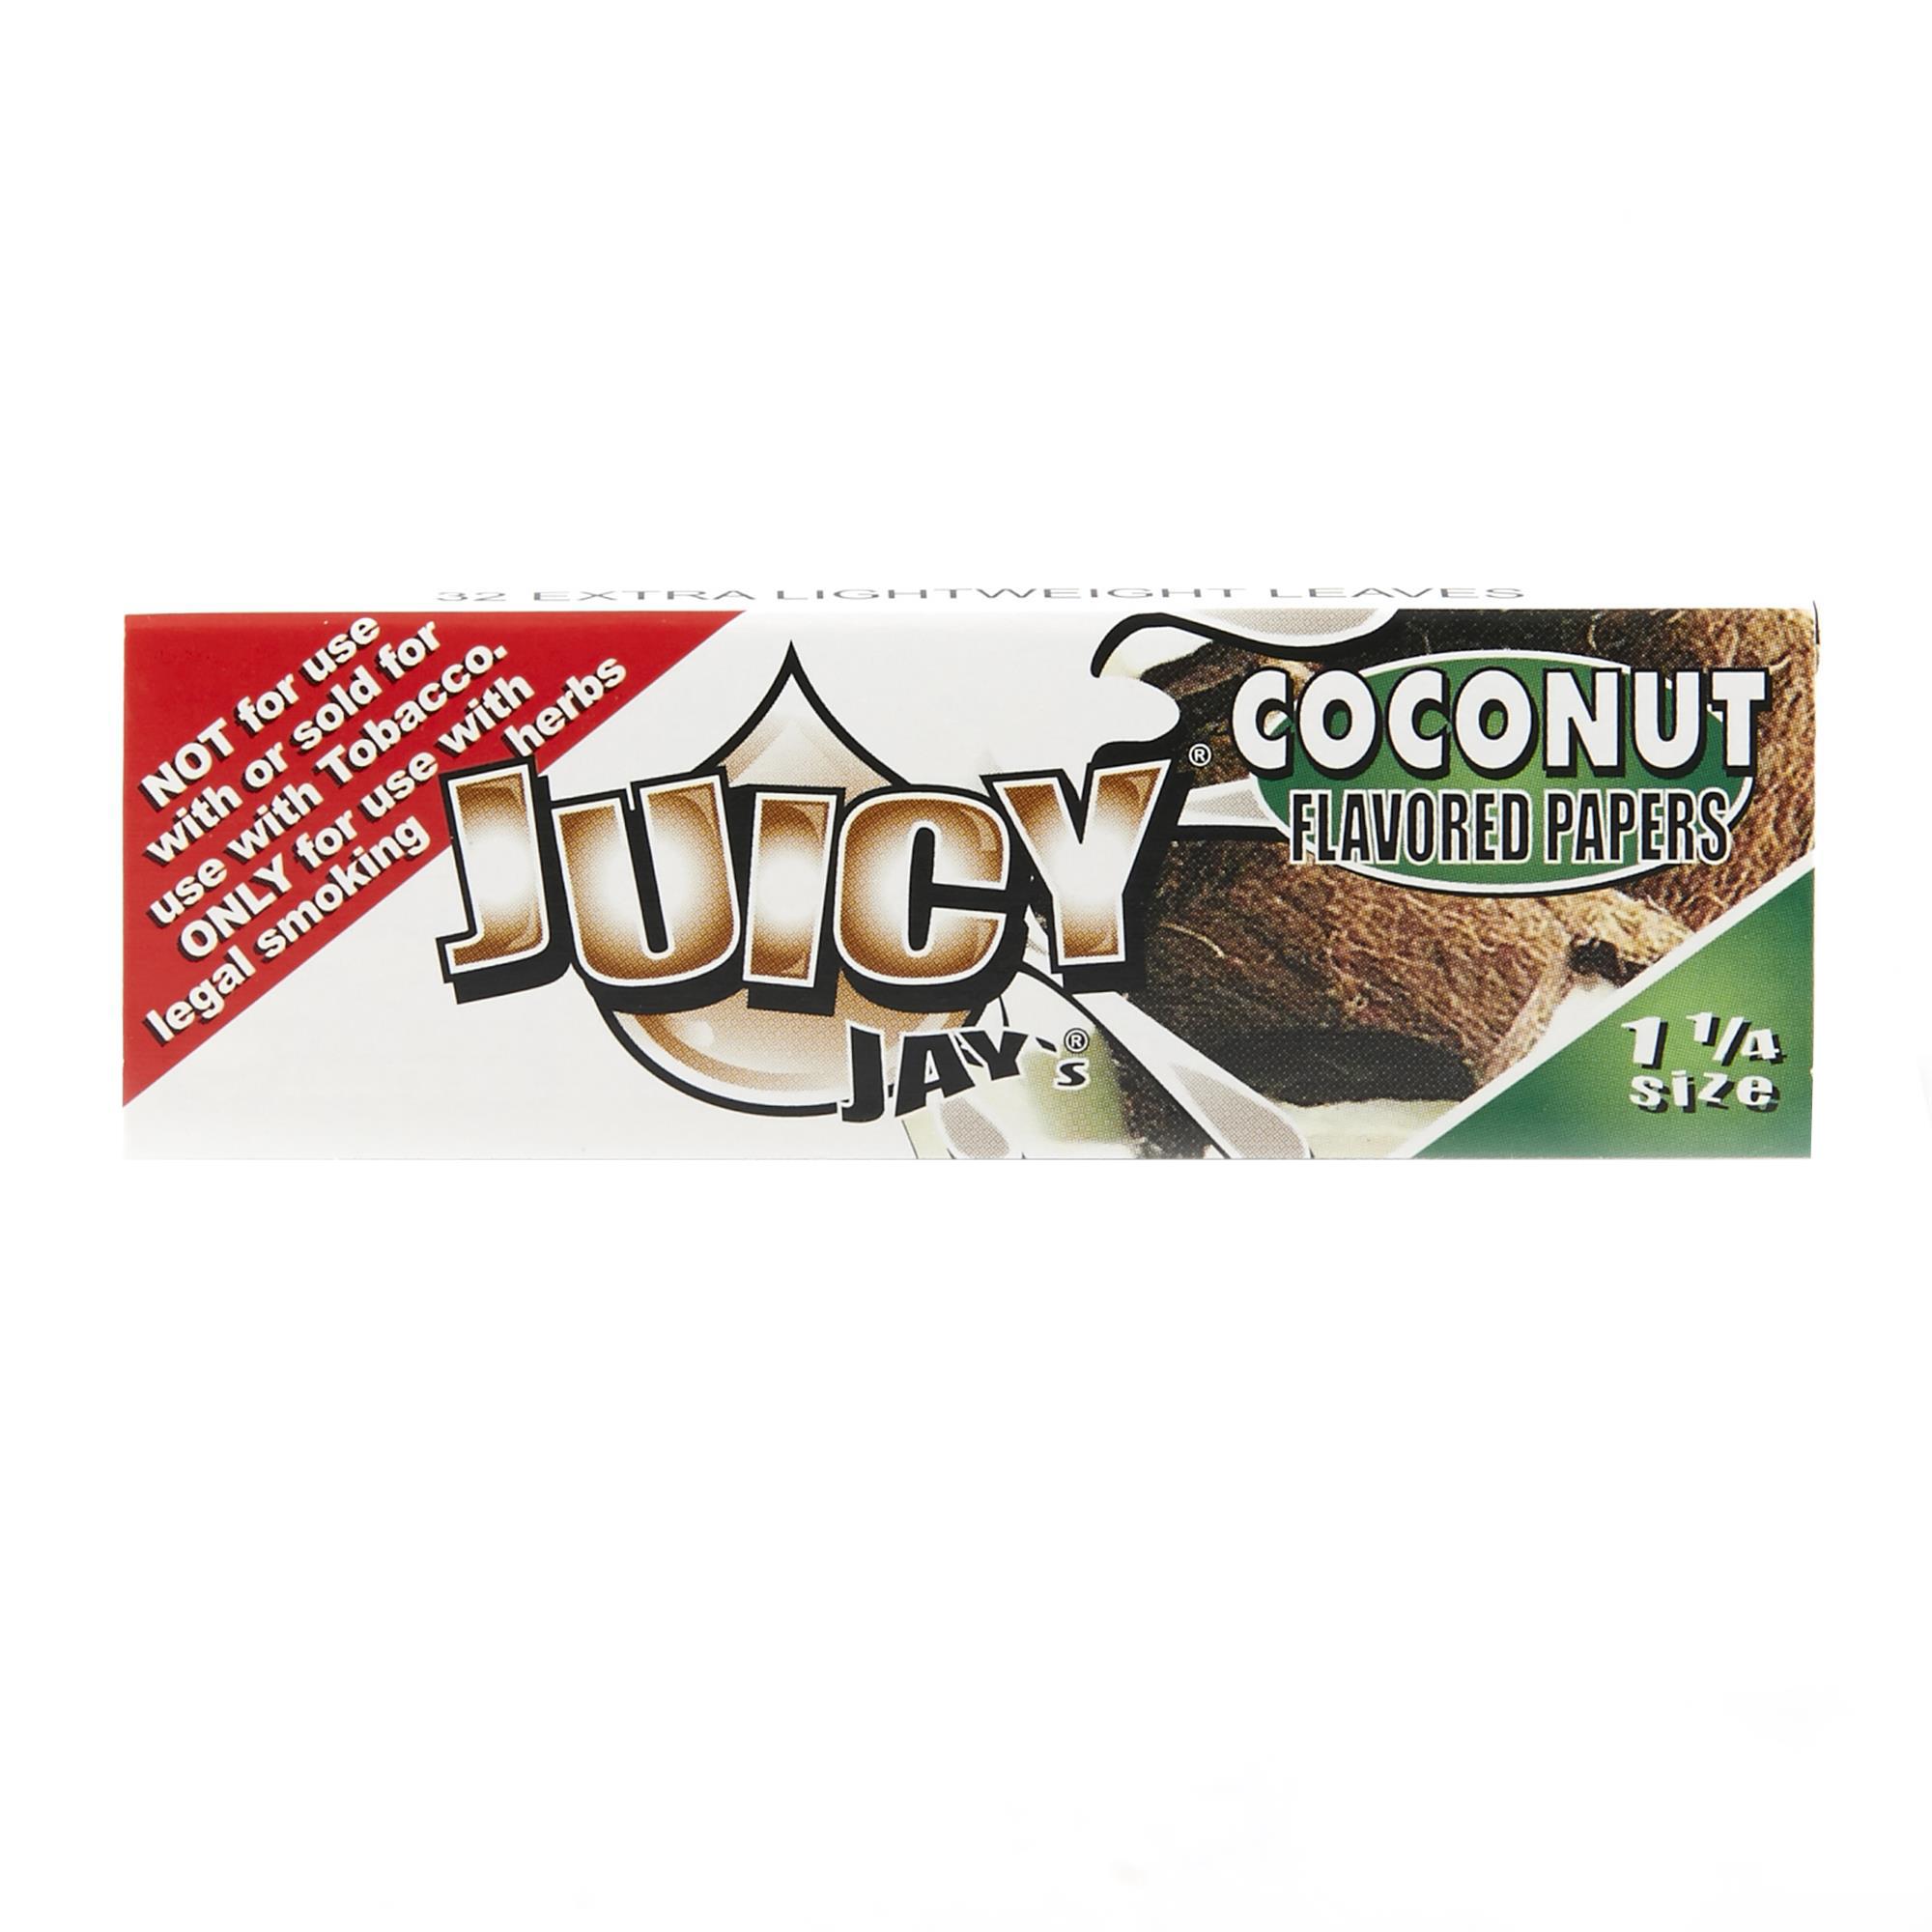 JUICY JAYS COCONUT